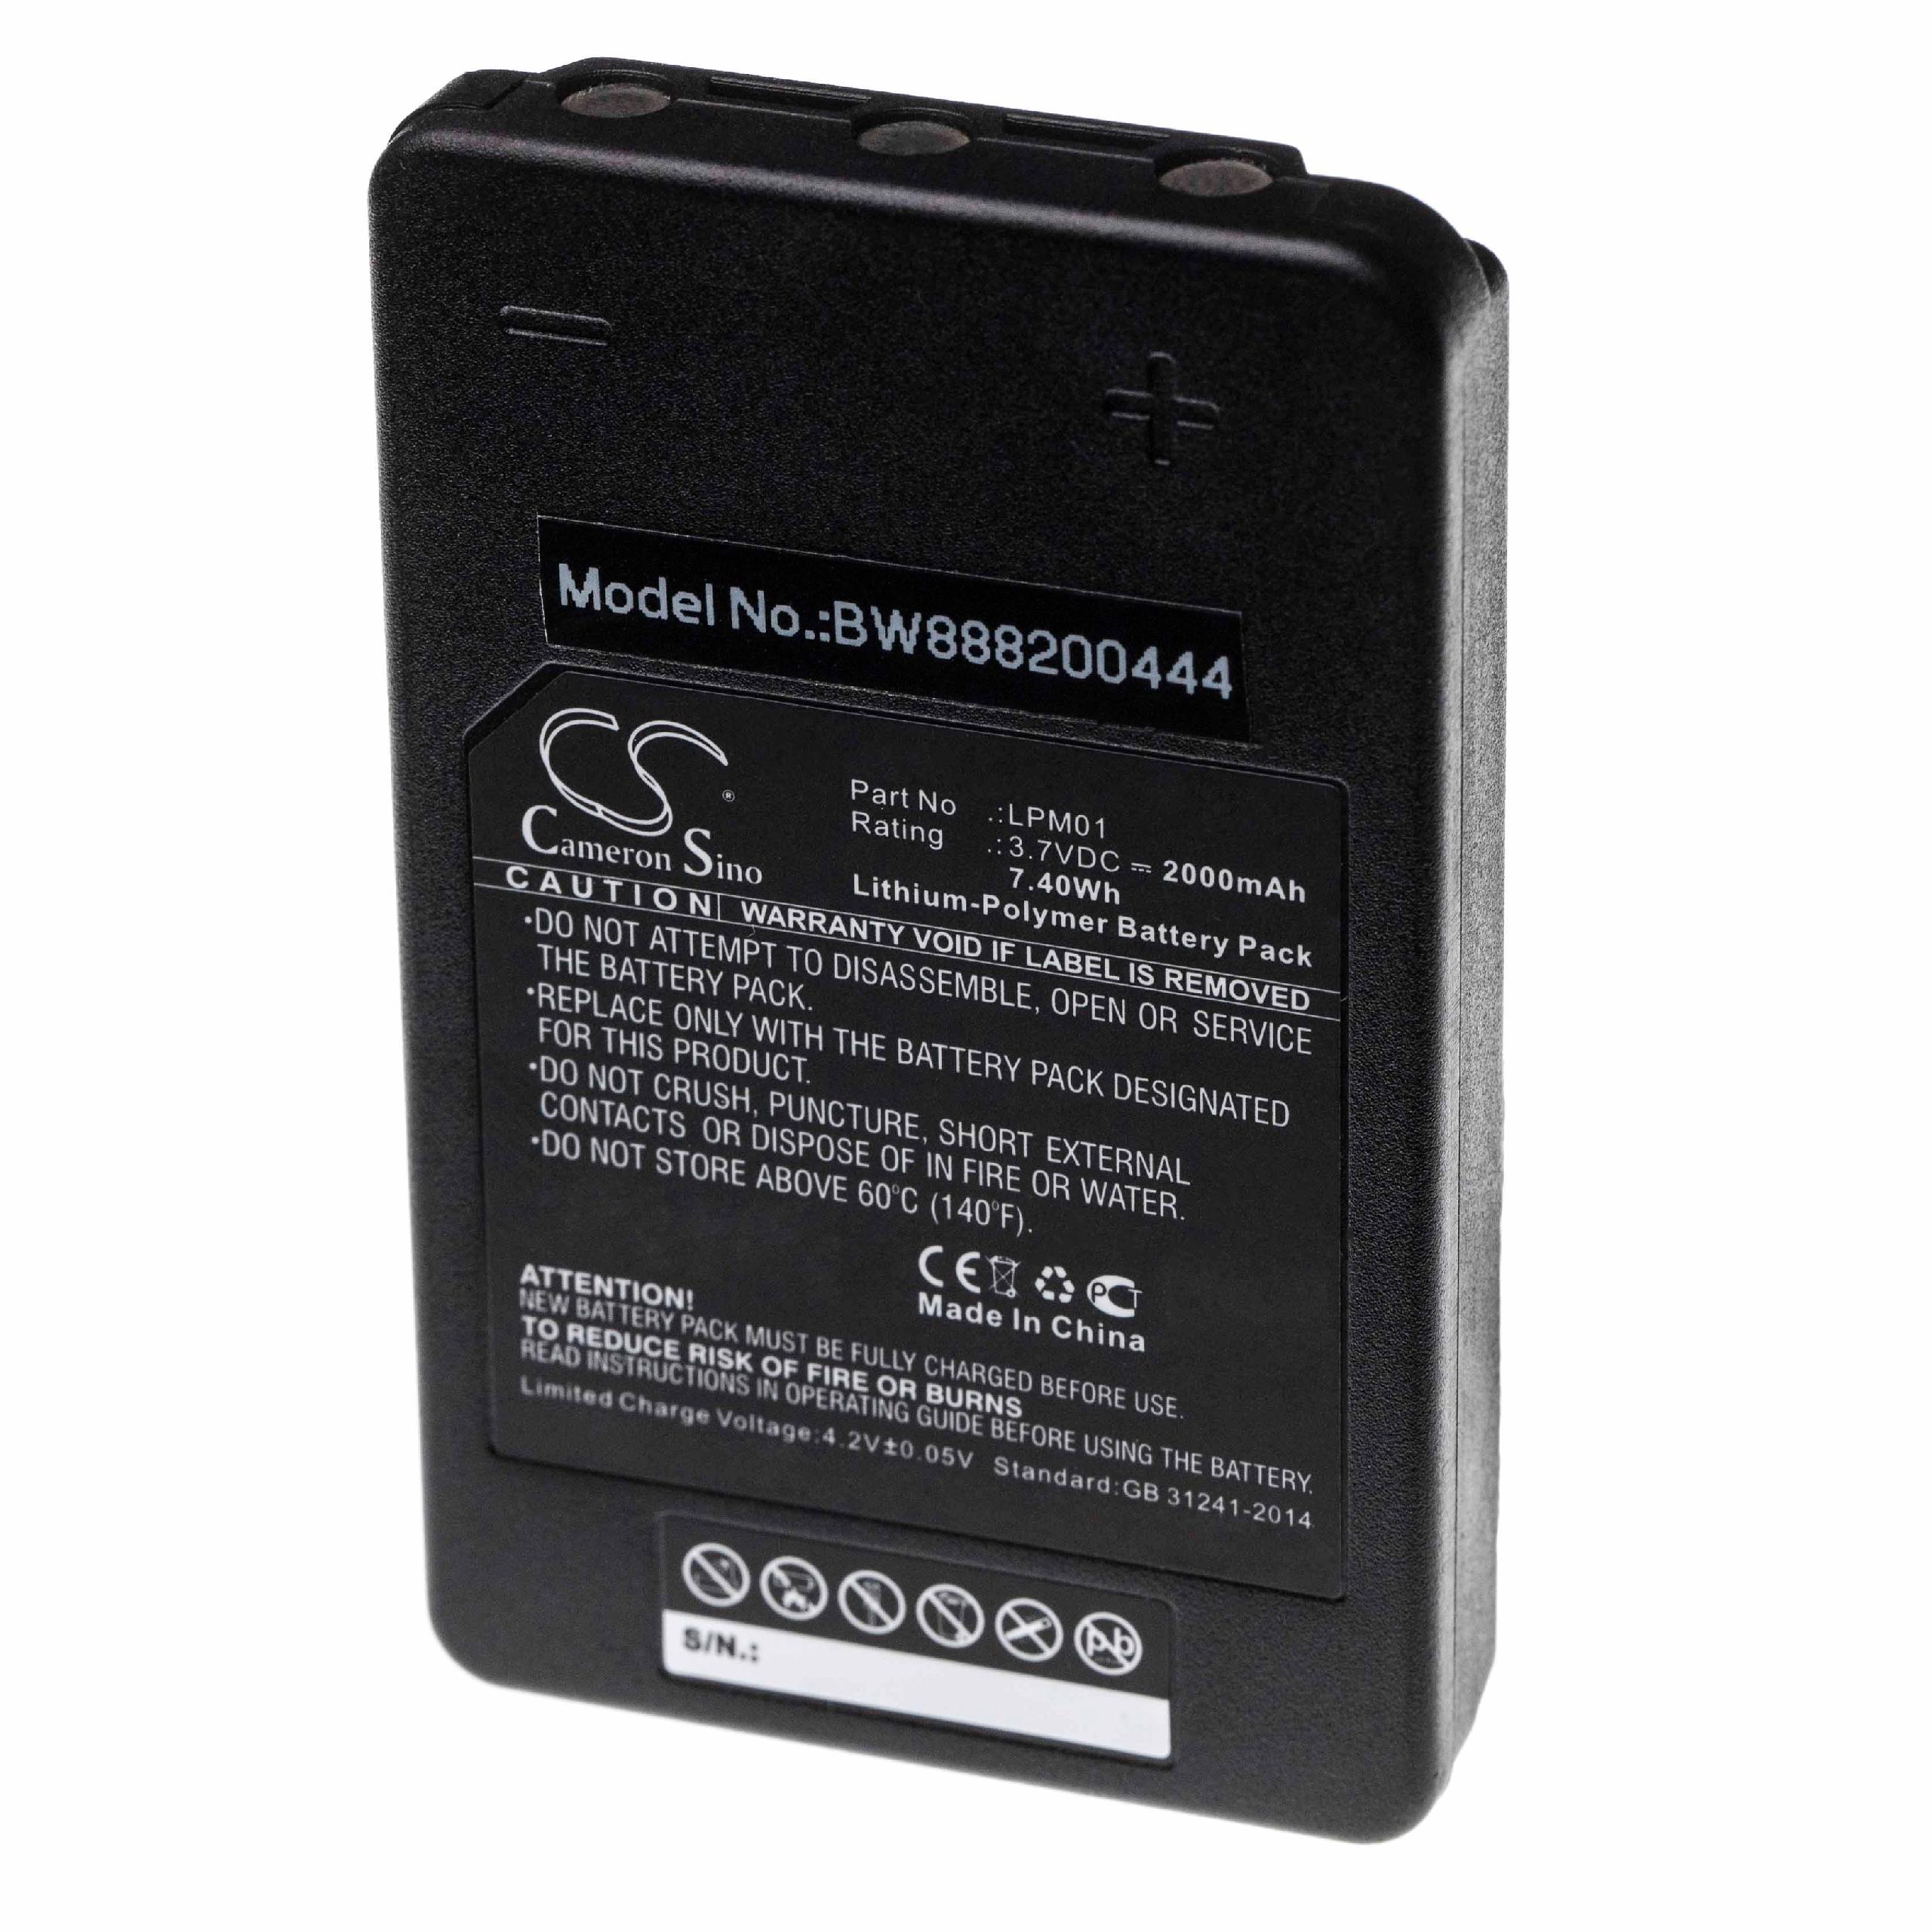 Batterie remplace Autec MHM03, LPM01LI, LPM01 pour télécomande industrielle - 2000mAh 3,7V Li-polymère